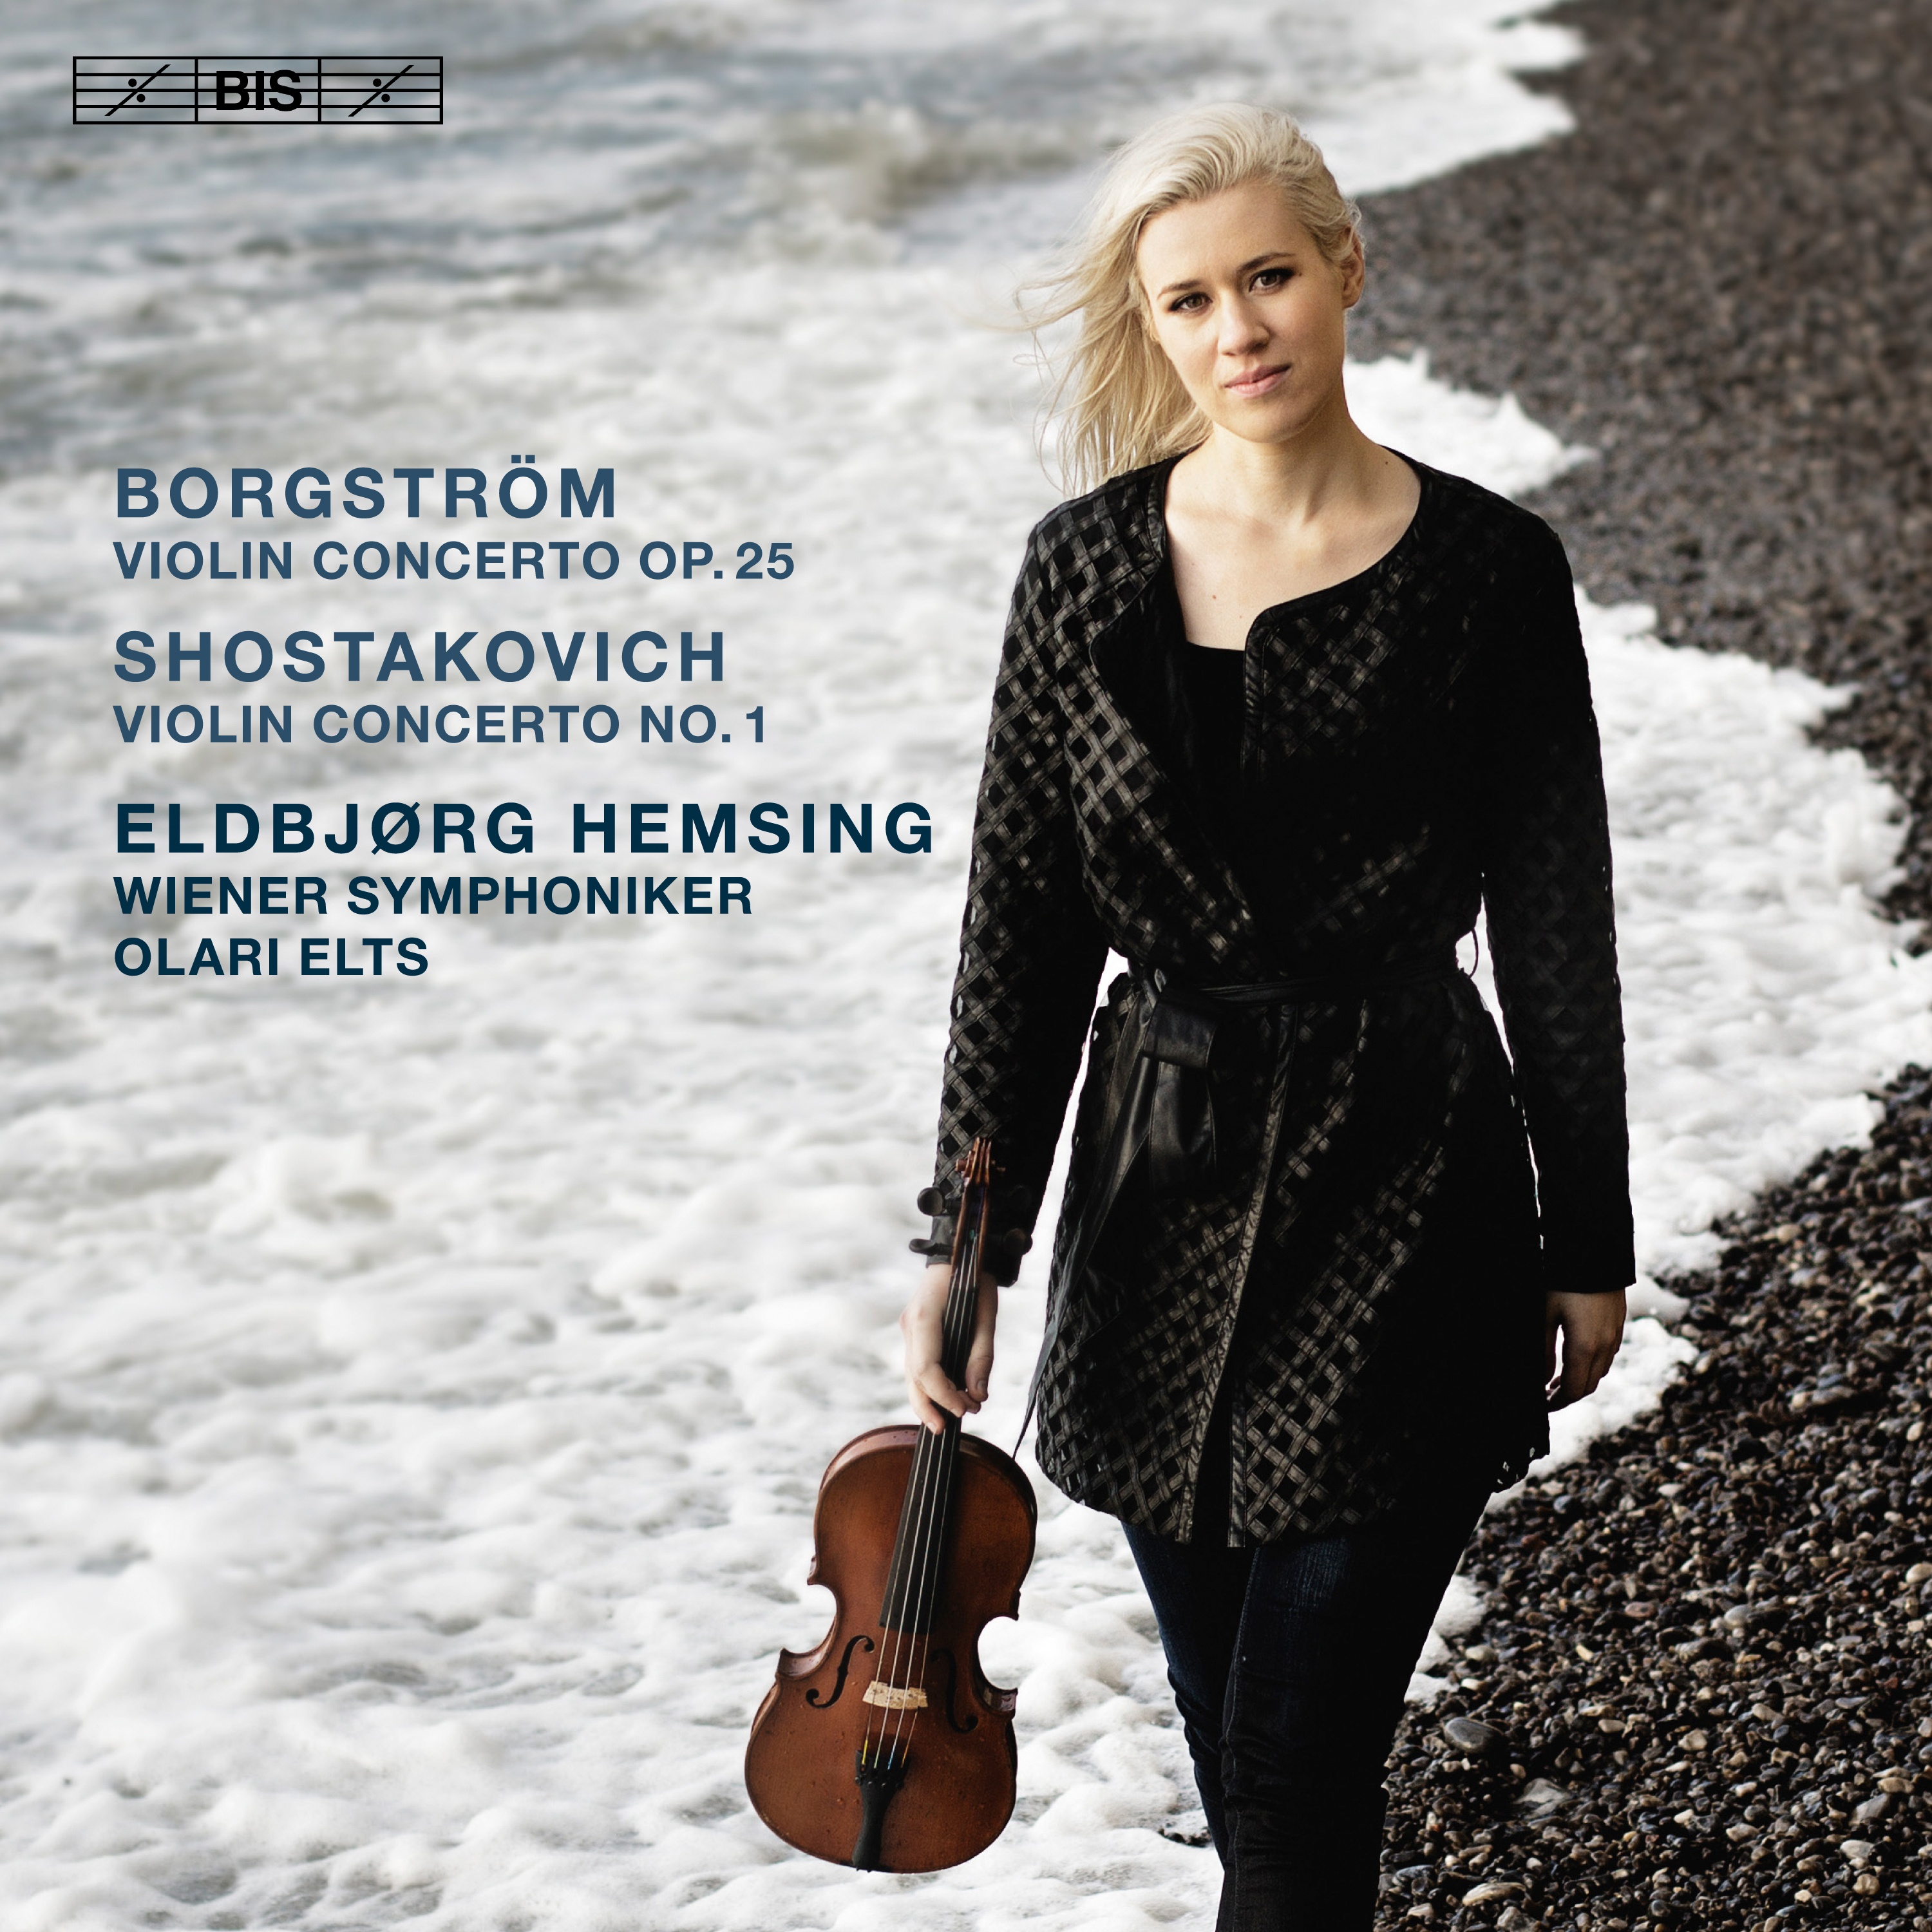 Borgstr m: Violin Concerto in G Major, Op. 25  Shostakovich: Violin Concerto No. 1 in A Minor, Op. 77